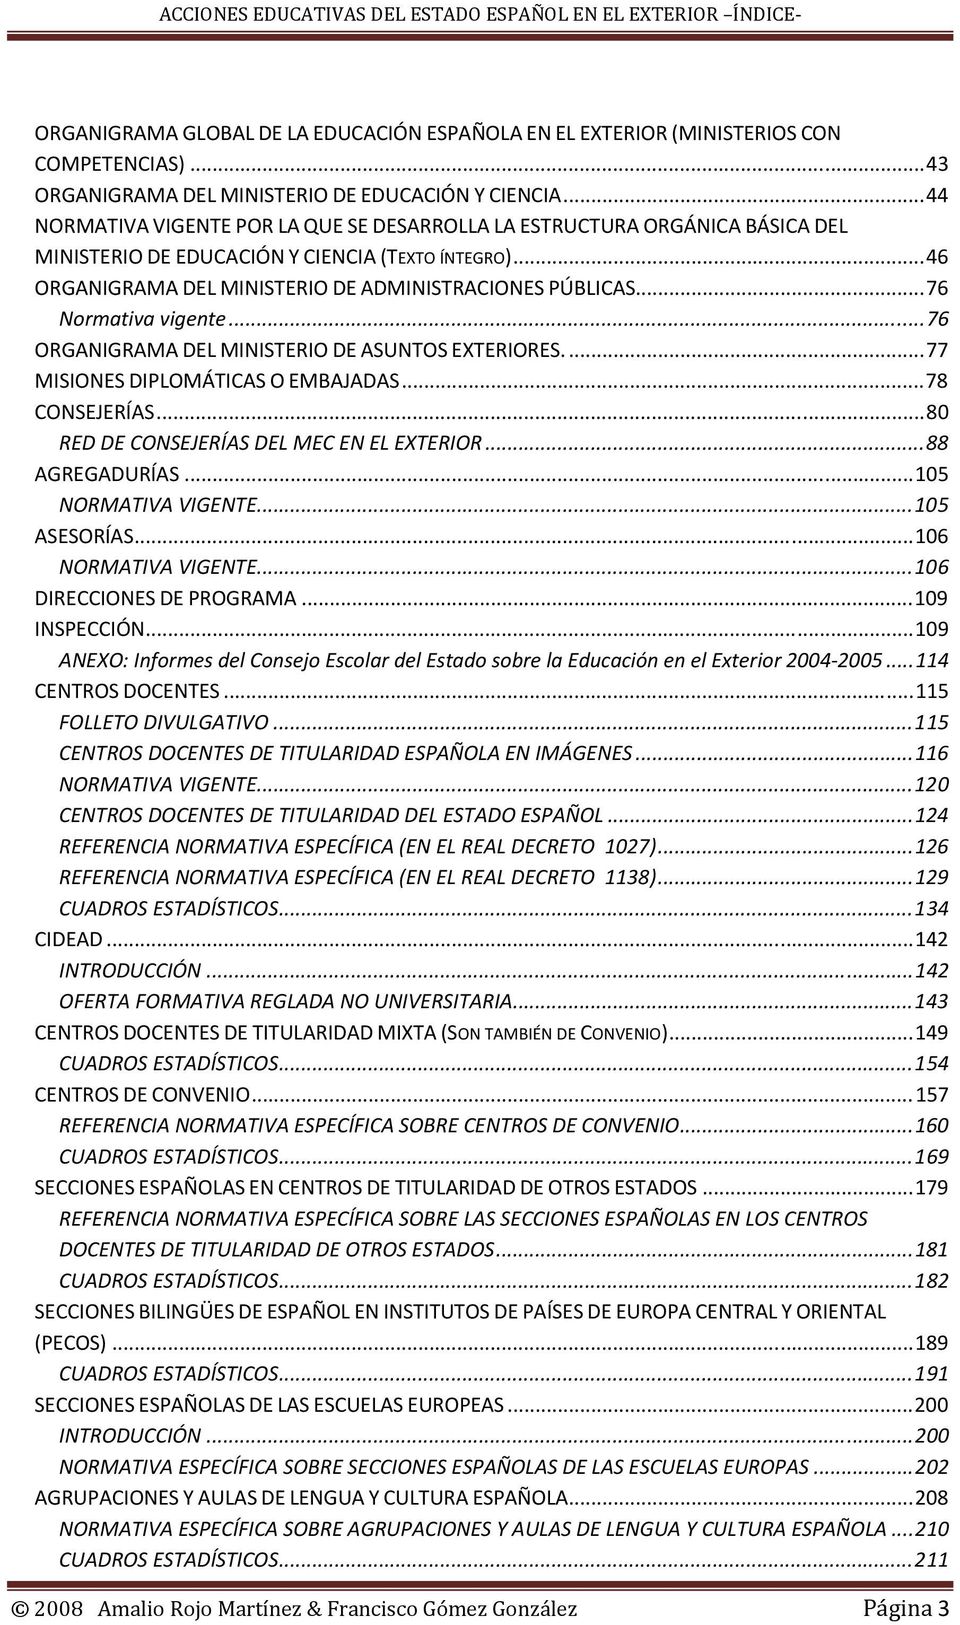 ..76 Normativa vigente...76 ORGANIGRAMA DEL MINISTERIO DE ASUNTOS EXTERIORES...77 MISIONES DIPLOMÁTICAS O EMBAJADAS...78 CONSEJERÍAS...80 RED DE CONSEJERÍAS DEL MEC EN EL EXTERIOR...88 AGREGADURÍAS.